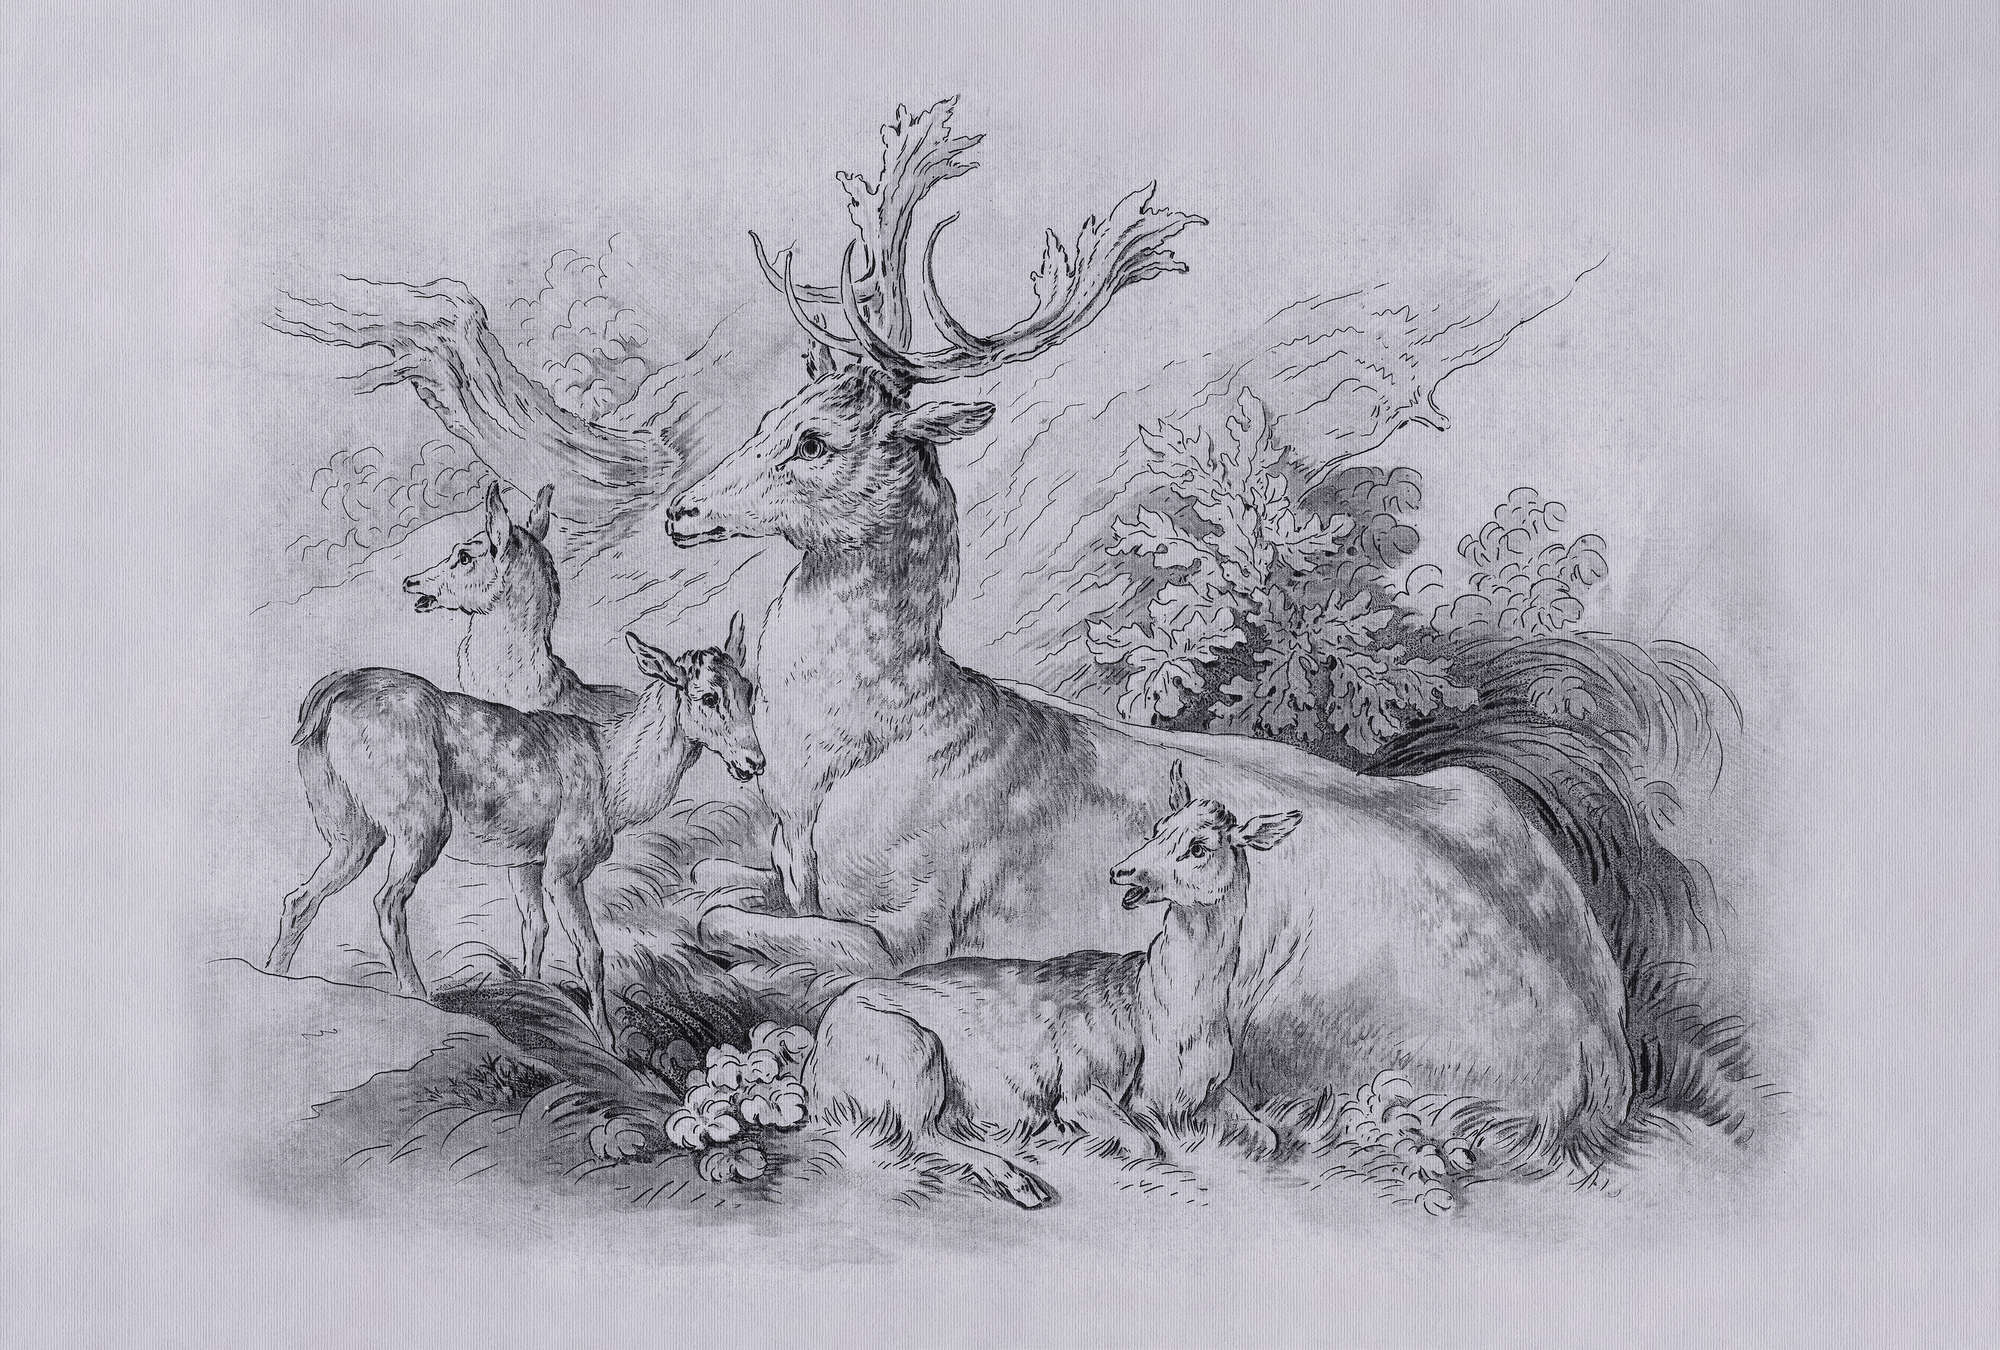             On the Grass 2 - Carta da parati con disegni vintage di cervi e cerbiatti in grigio
        